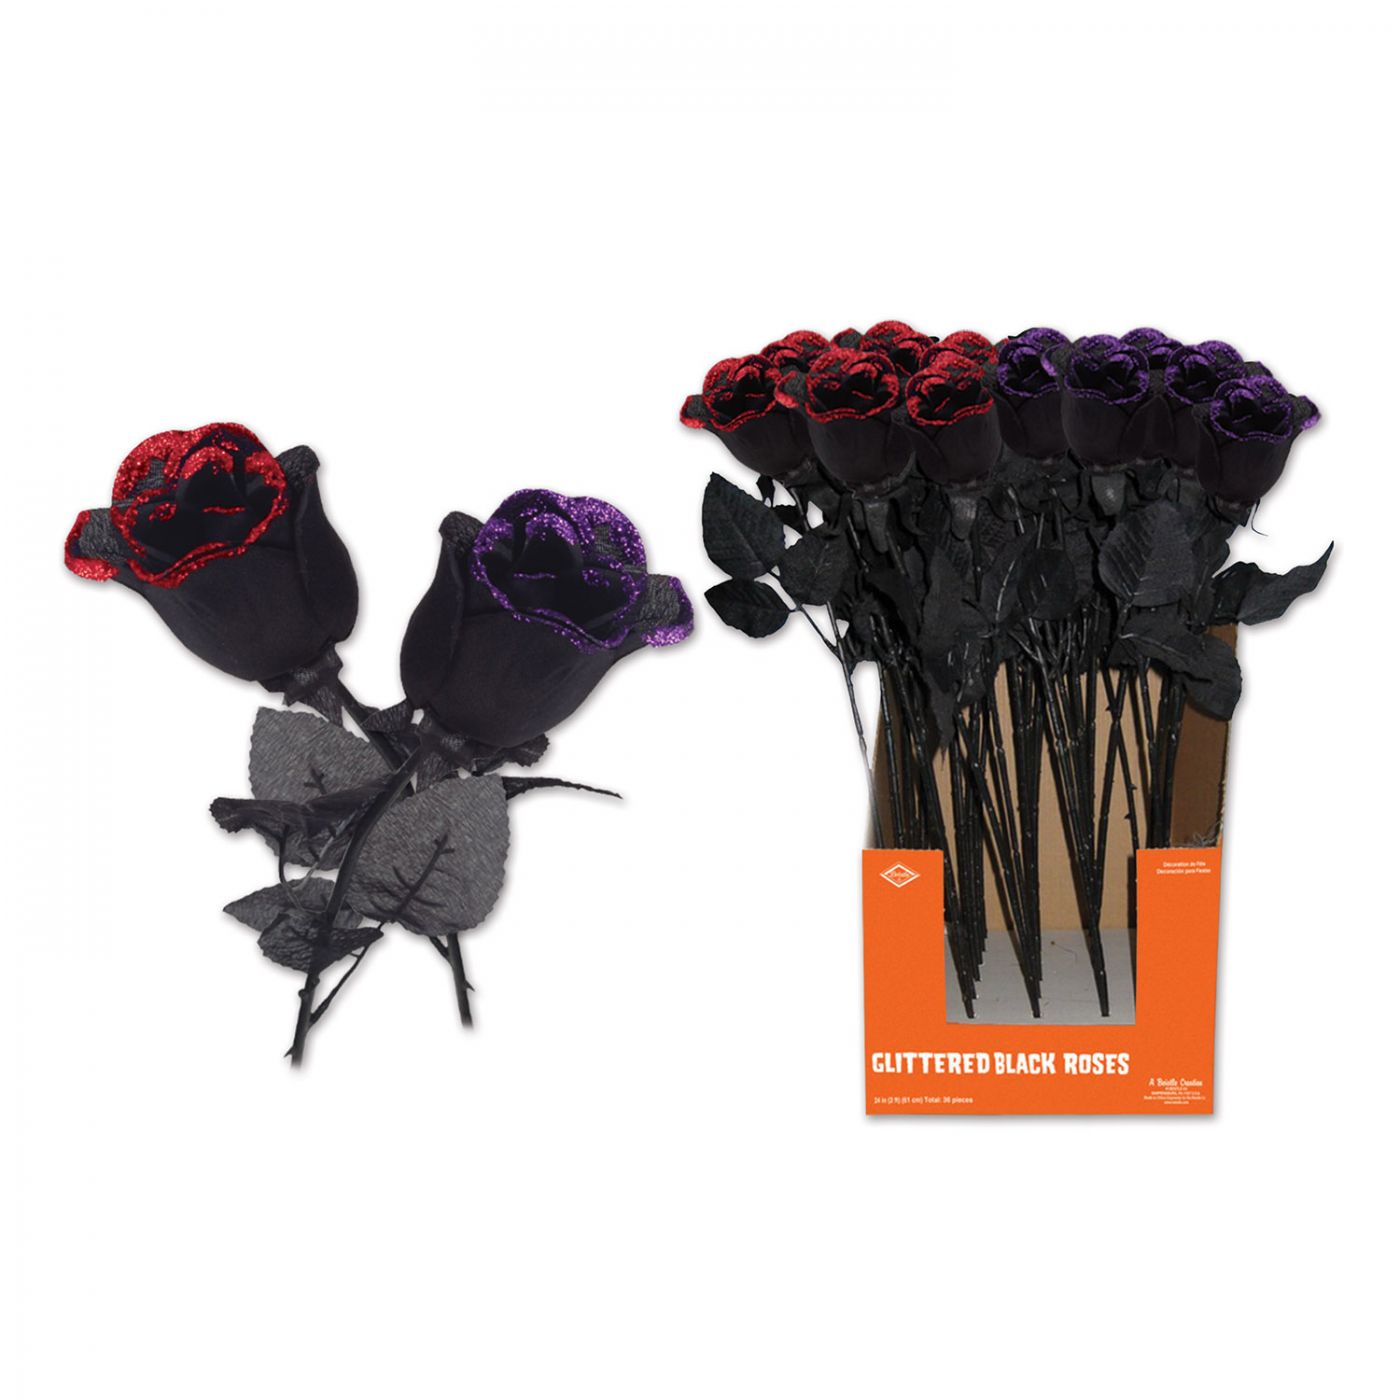 Glittered Black Roses (36) image